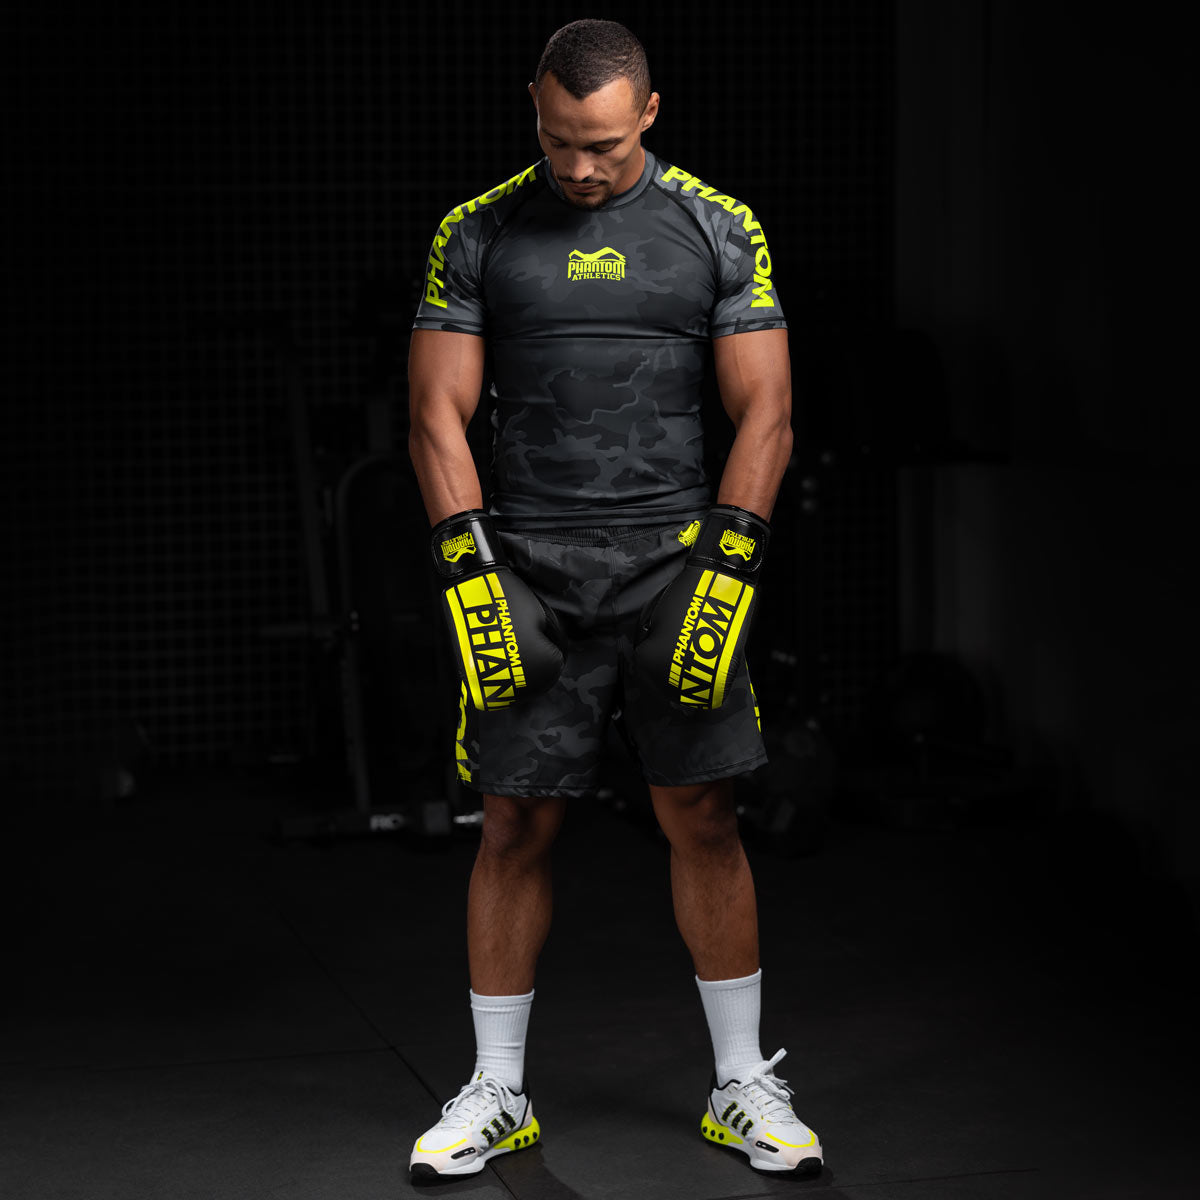 MMA Fighter Karan Mosebach mit der Neon gelben Kampfsportausrüstung von Phantom beim Fighttraining